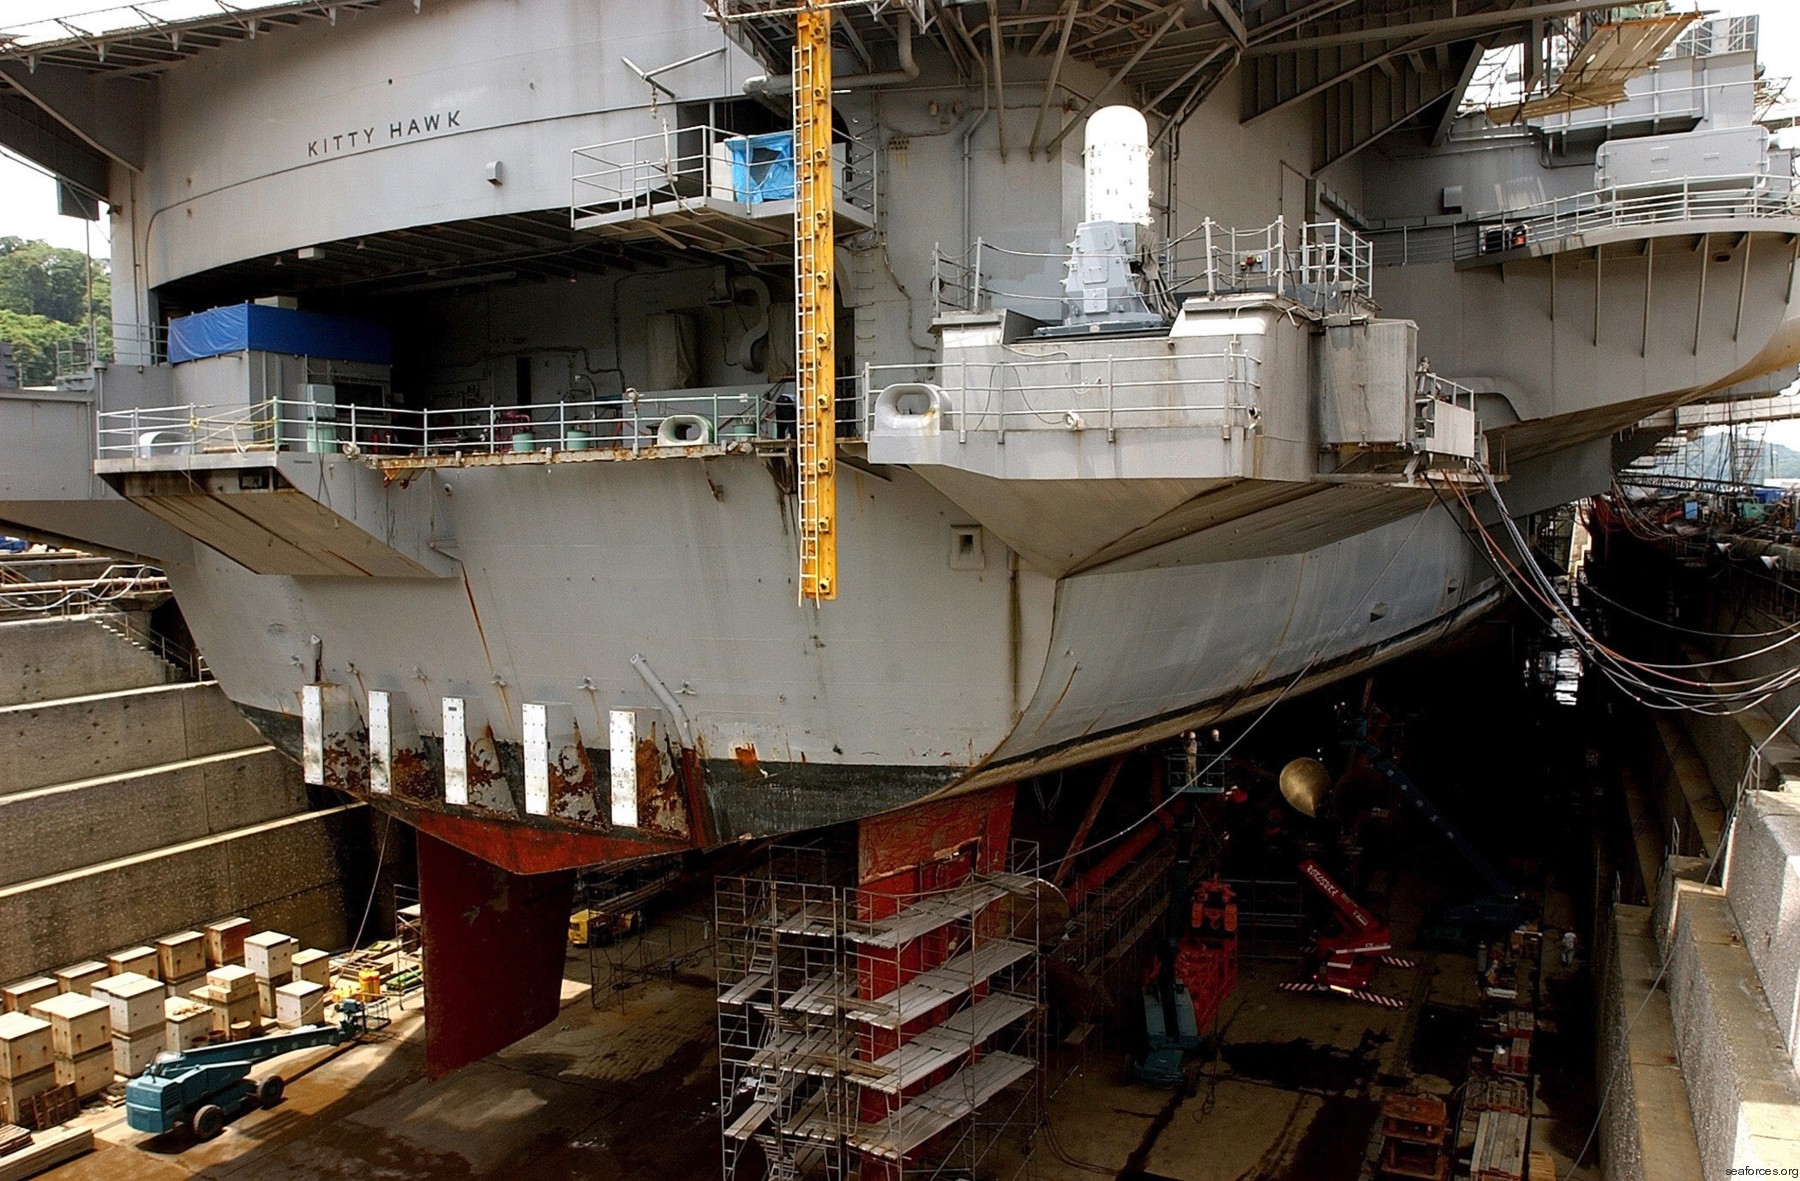 cv-63 uss kitty hawk aircraft carrier drydock repairs yokosuka